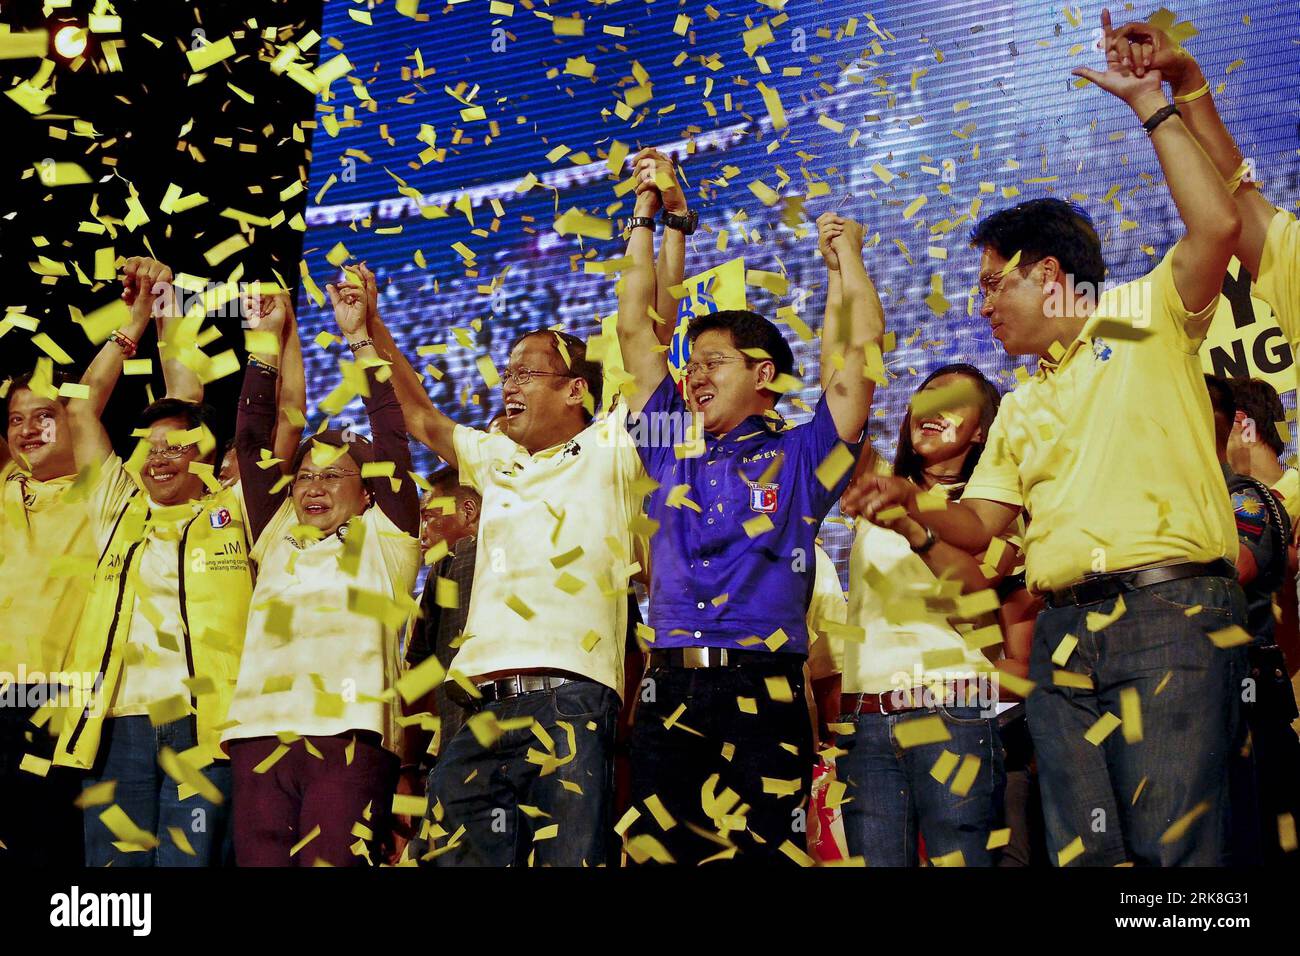 Bildnummer : 54033538 Datum : 07.05.2010 Copyright : imago/Xinhua (100508) -- MANILLE, 8 mai 2010 (Xinhua) -- Benigno Aquino III (4e L) et ses partisans assistent à son dernier rassemblement de campagne à Quezon City, Philippines, le 7 mai 2010. Les élections présidentielles et locales de 2010 auront lieu le 10 mai dans toutes les Philippines. (Xinhua/Dondi Tawatao) (cl) PHILIPPINES-ELECTIONS-PRÉPARATIFS PUBLICATIONxNOTxINxCHN Politik People Wahl Philippinen Vorbereitung Premiumd xint kbdig xub 2010 quer o00 Wahlkampf Bildnummer 54033538 Date 07 05 2010 Copyright Imago XINHUA Banque D'Images